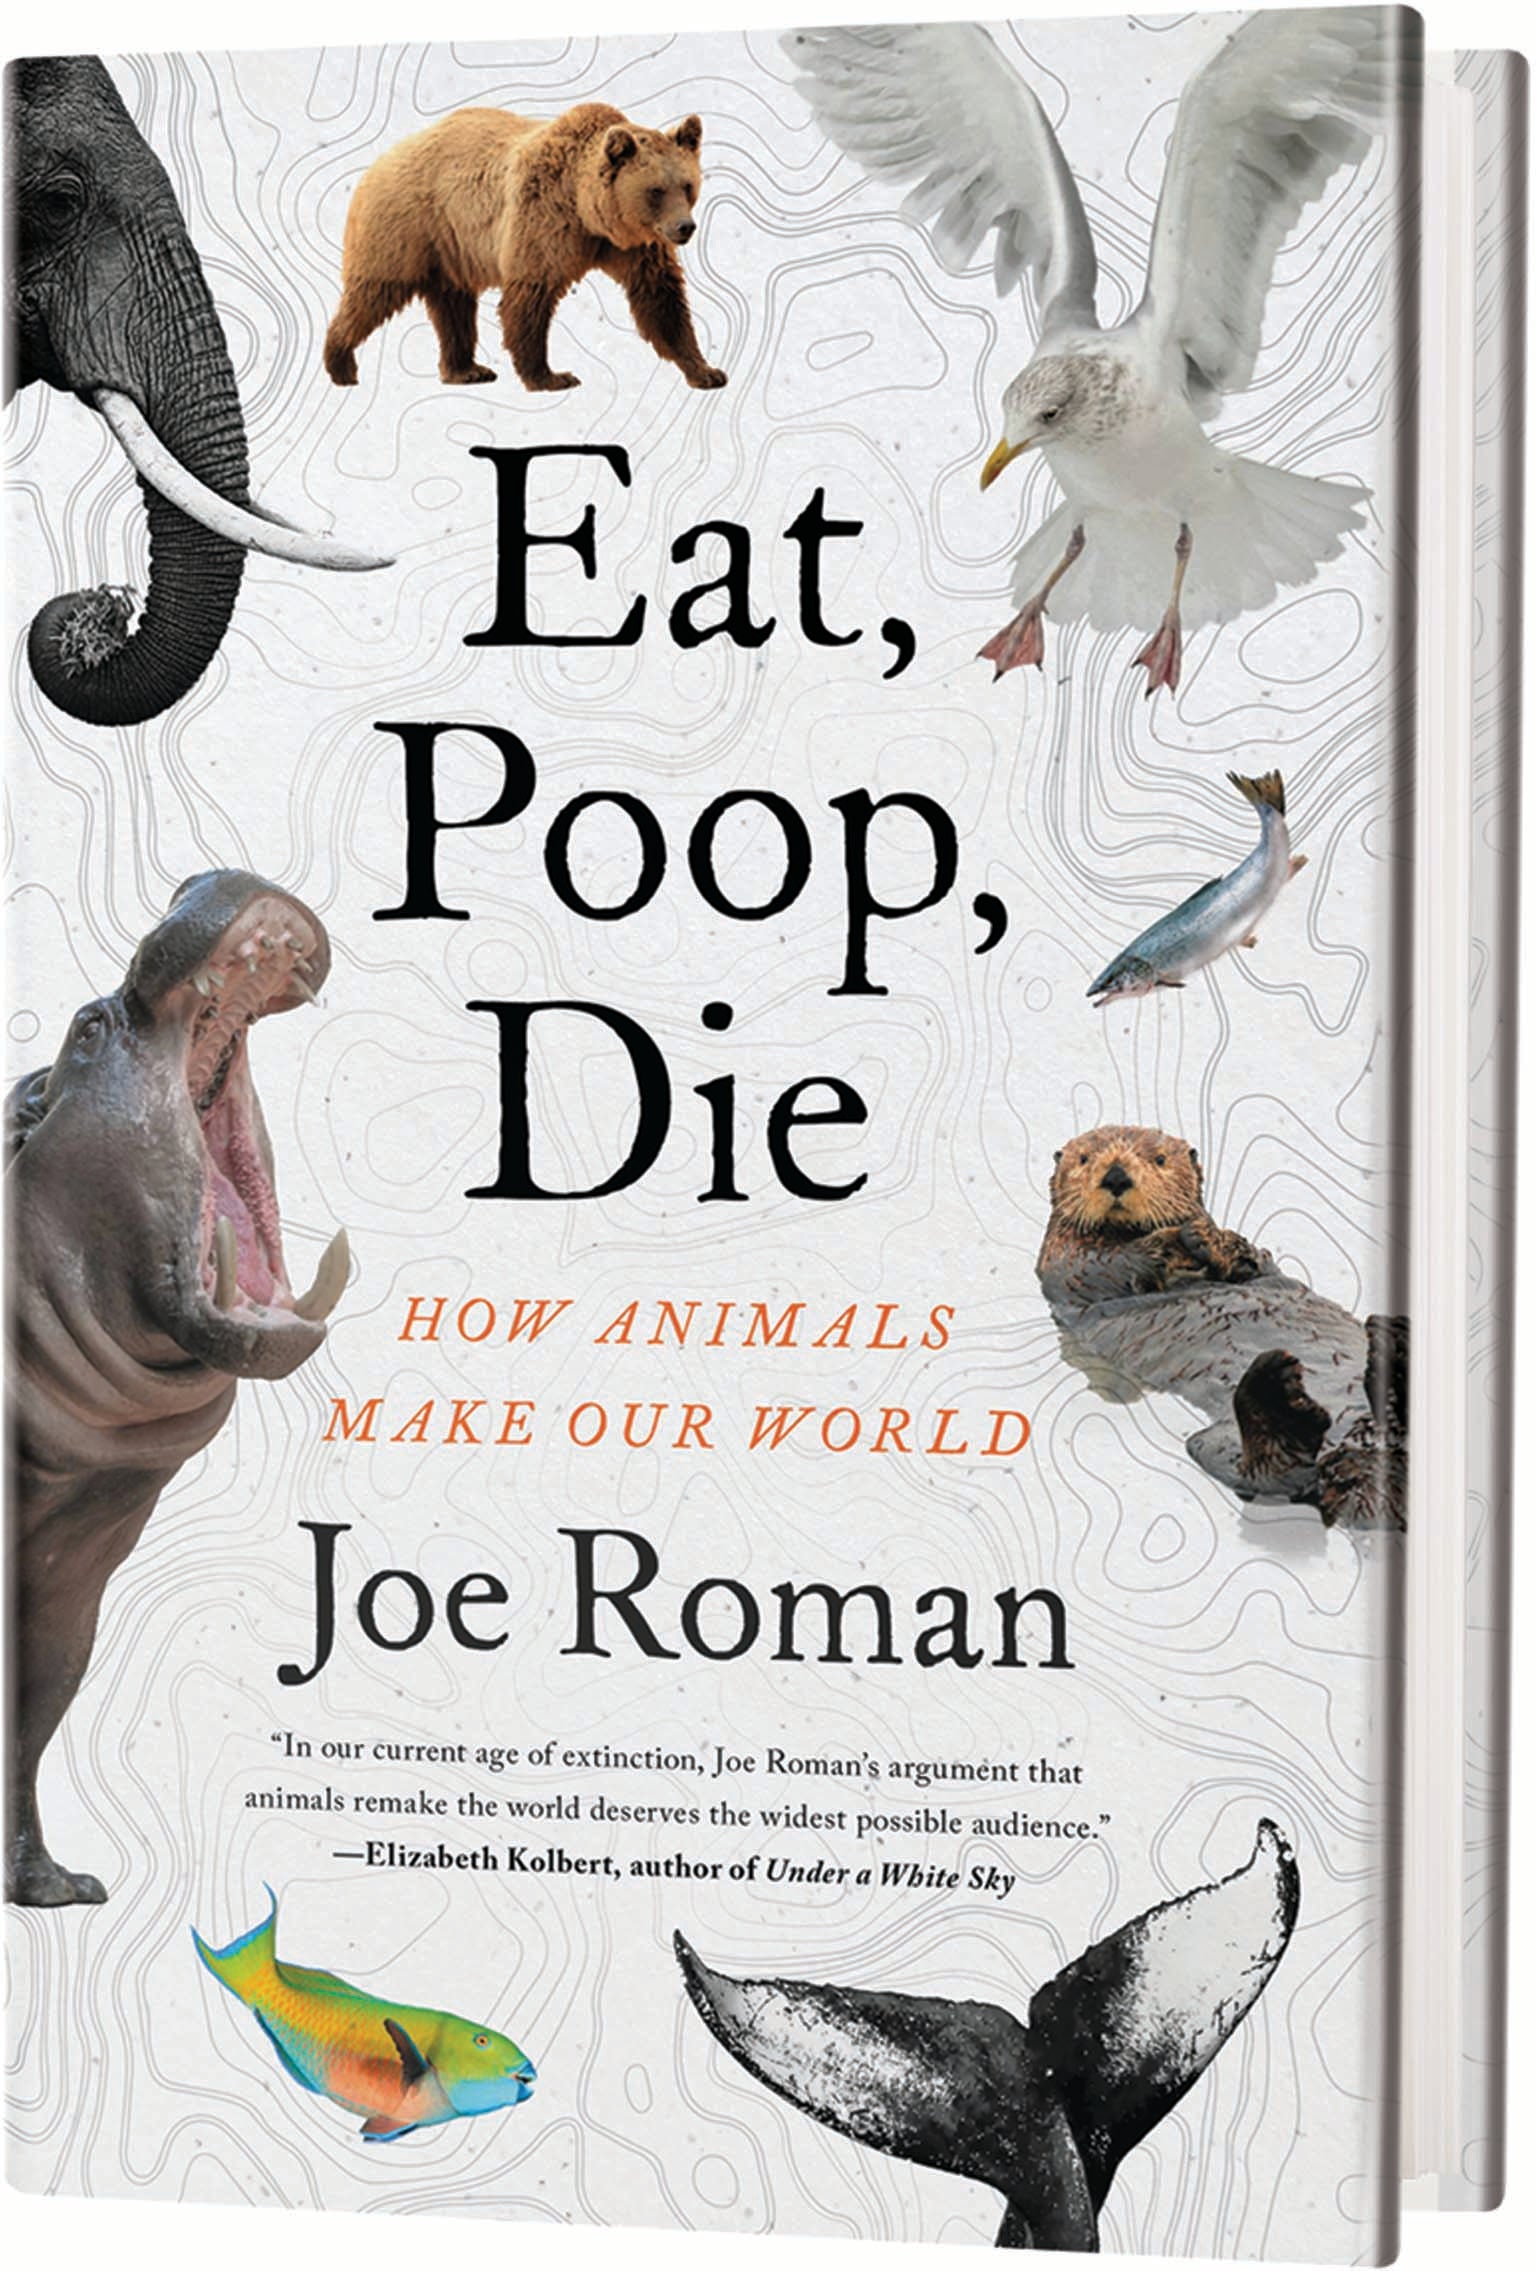 Cover of the book "Eat, Poop, Die"